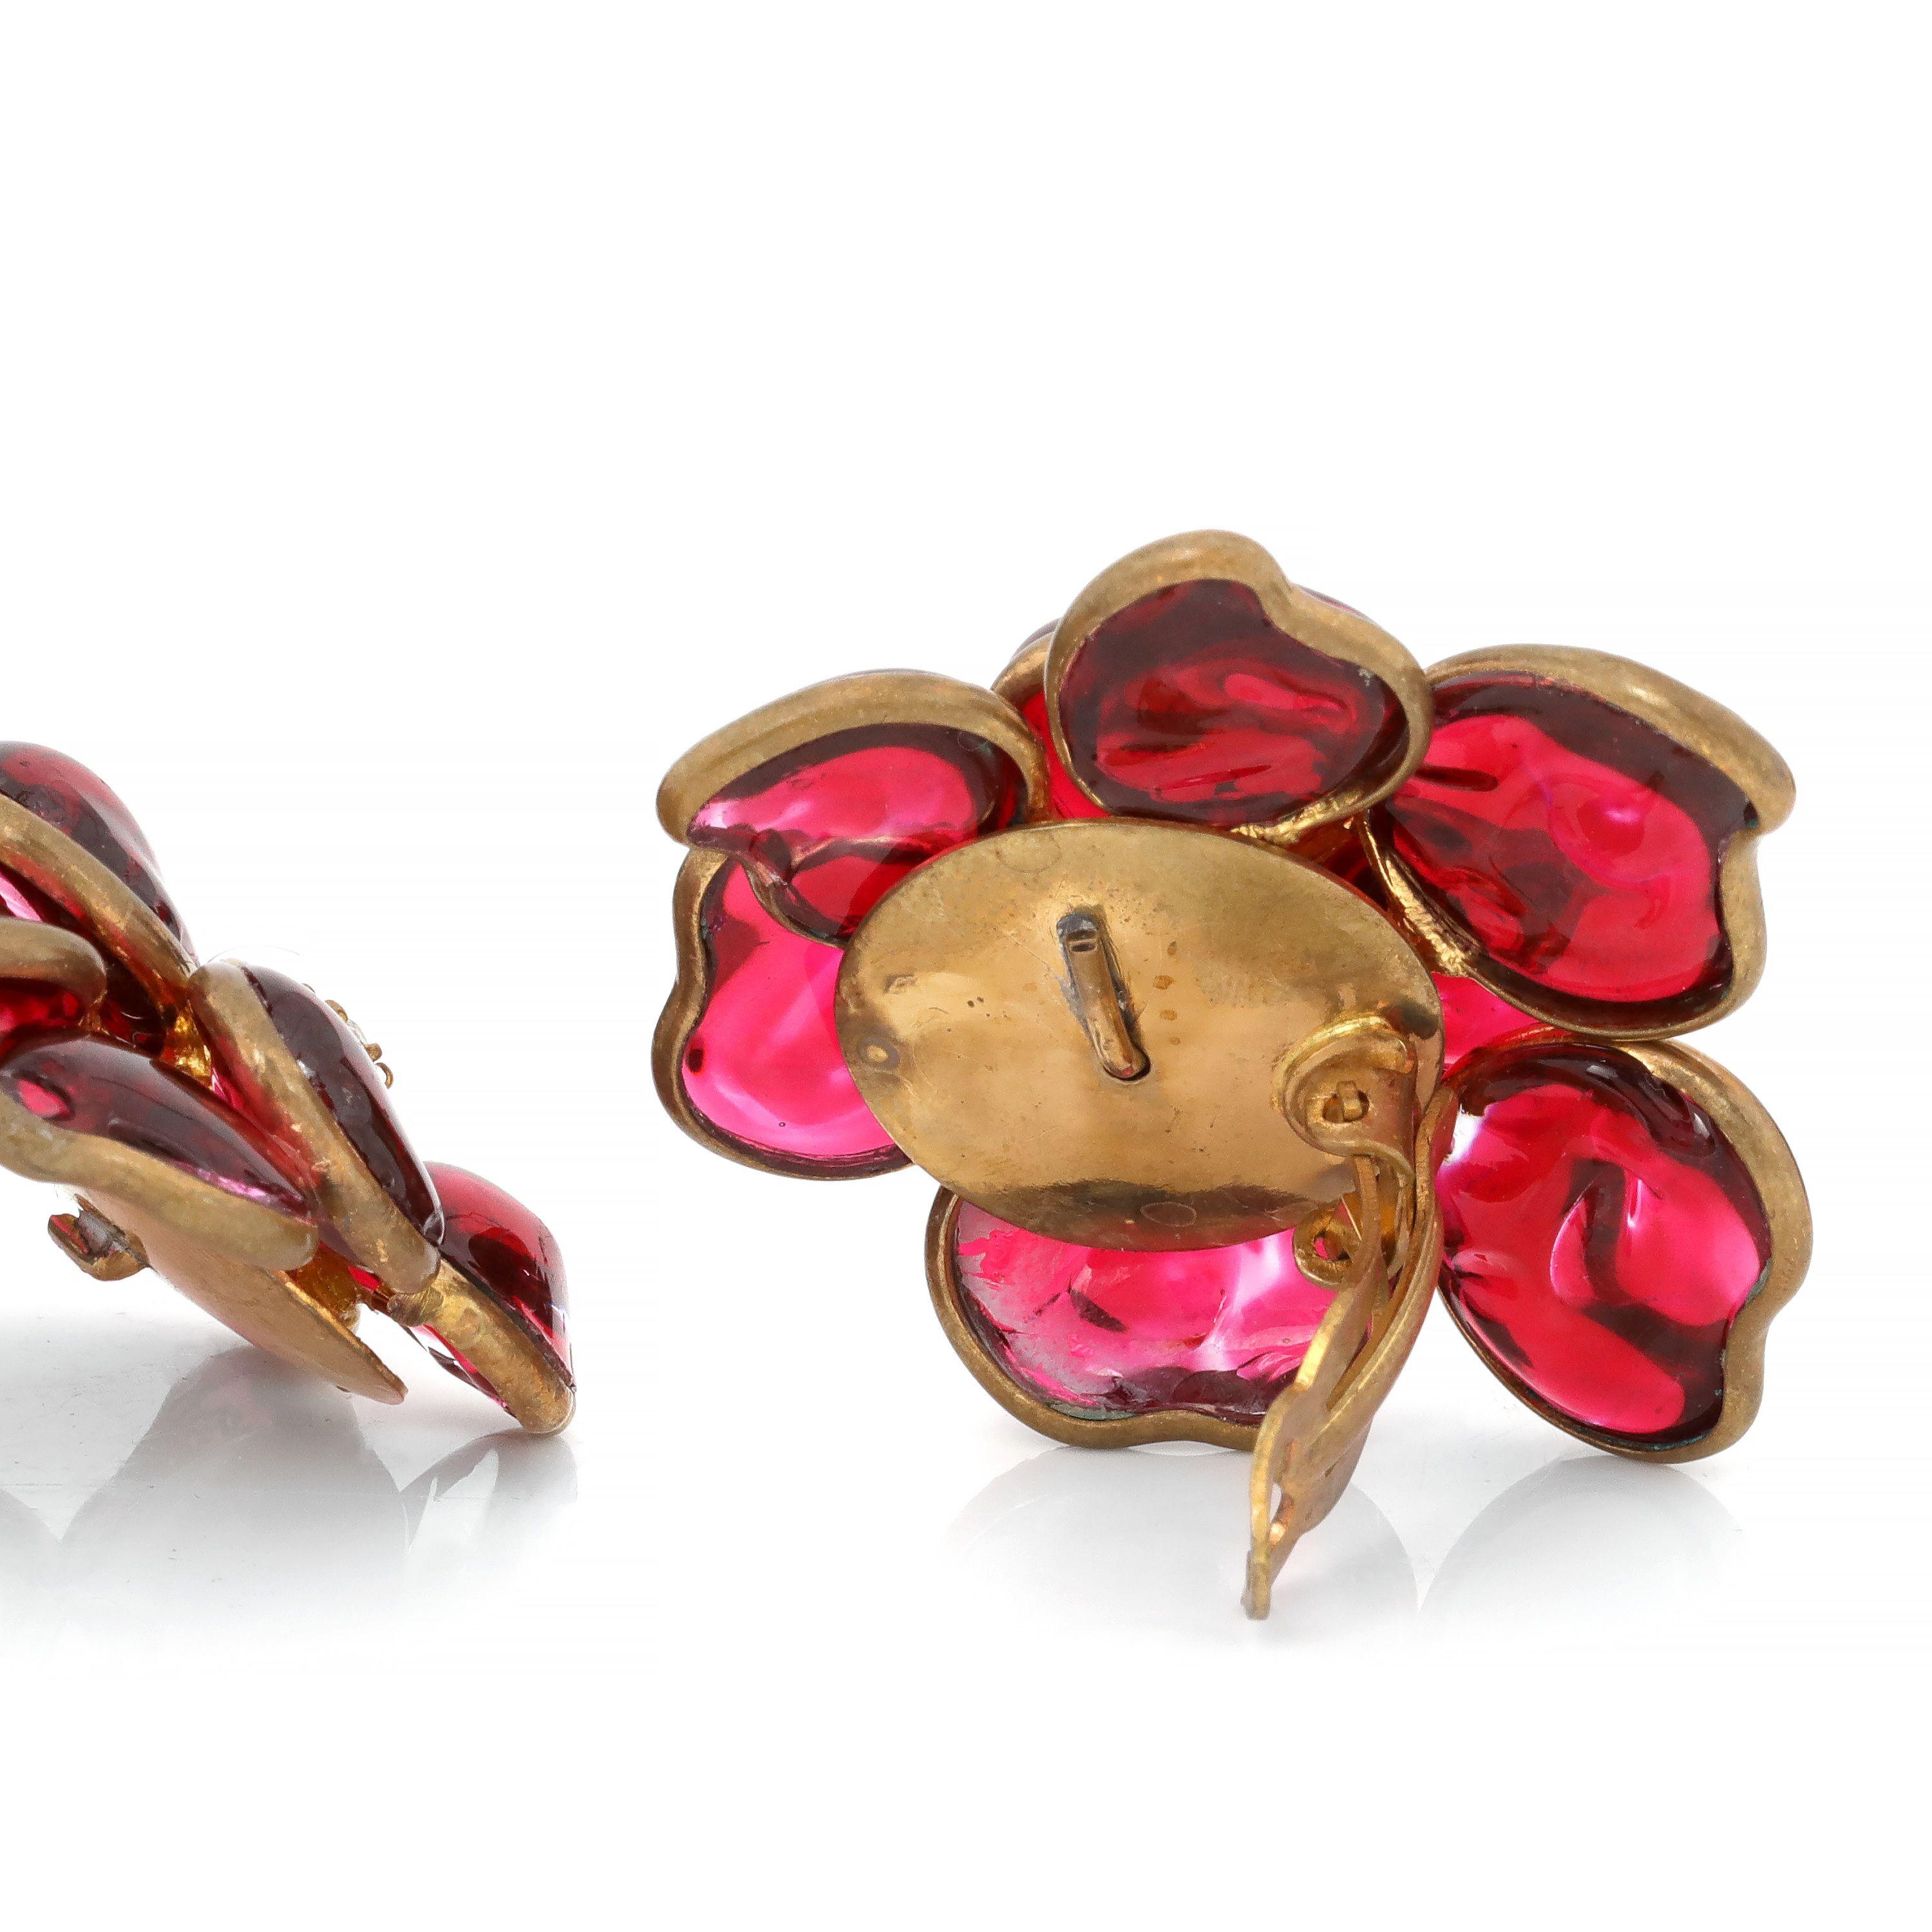 Diese authentischen Chanel Red Gripoix und Crystal Camellia Ohrringe sind in ausgezeichnetem Zustand frühen Vintage.  Clip-on-Stil, goldene Hardware, rotes Gripoix-Glas mit Kristallzentren.    Inklusive Tasche oder Box. 
PBF 13908
